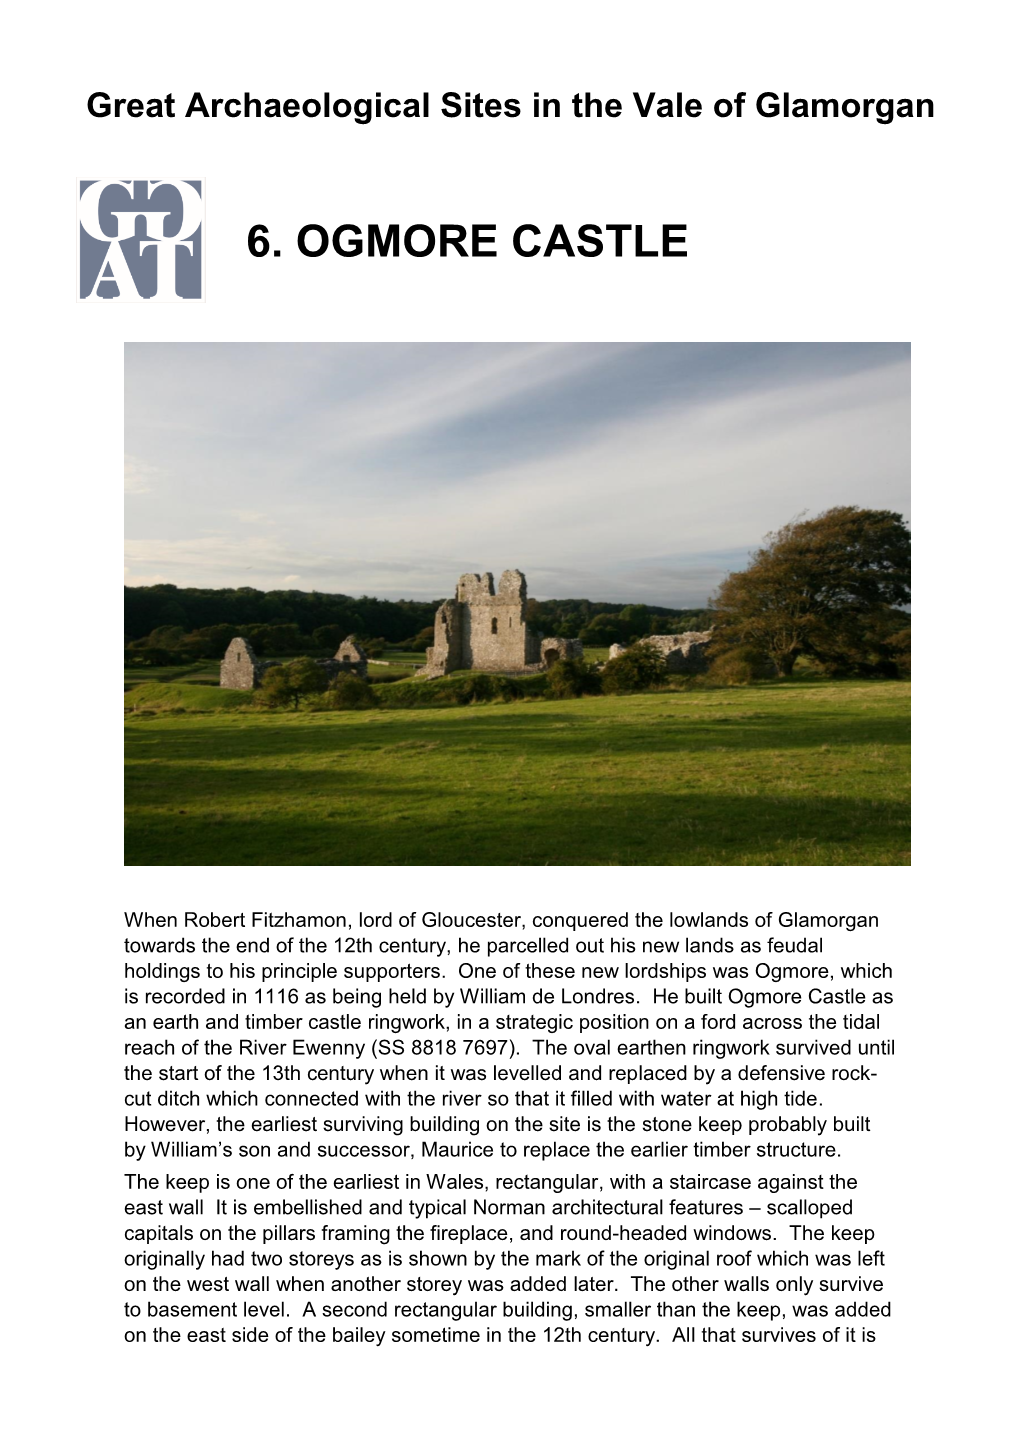 6. Ogmore Castle